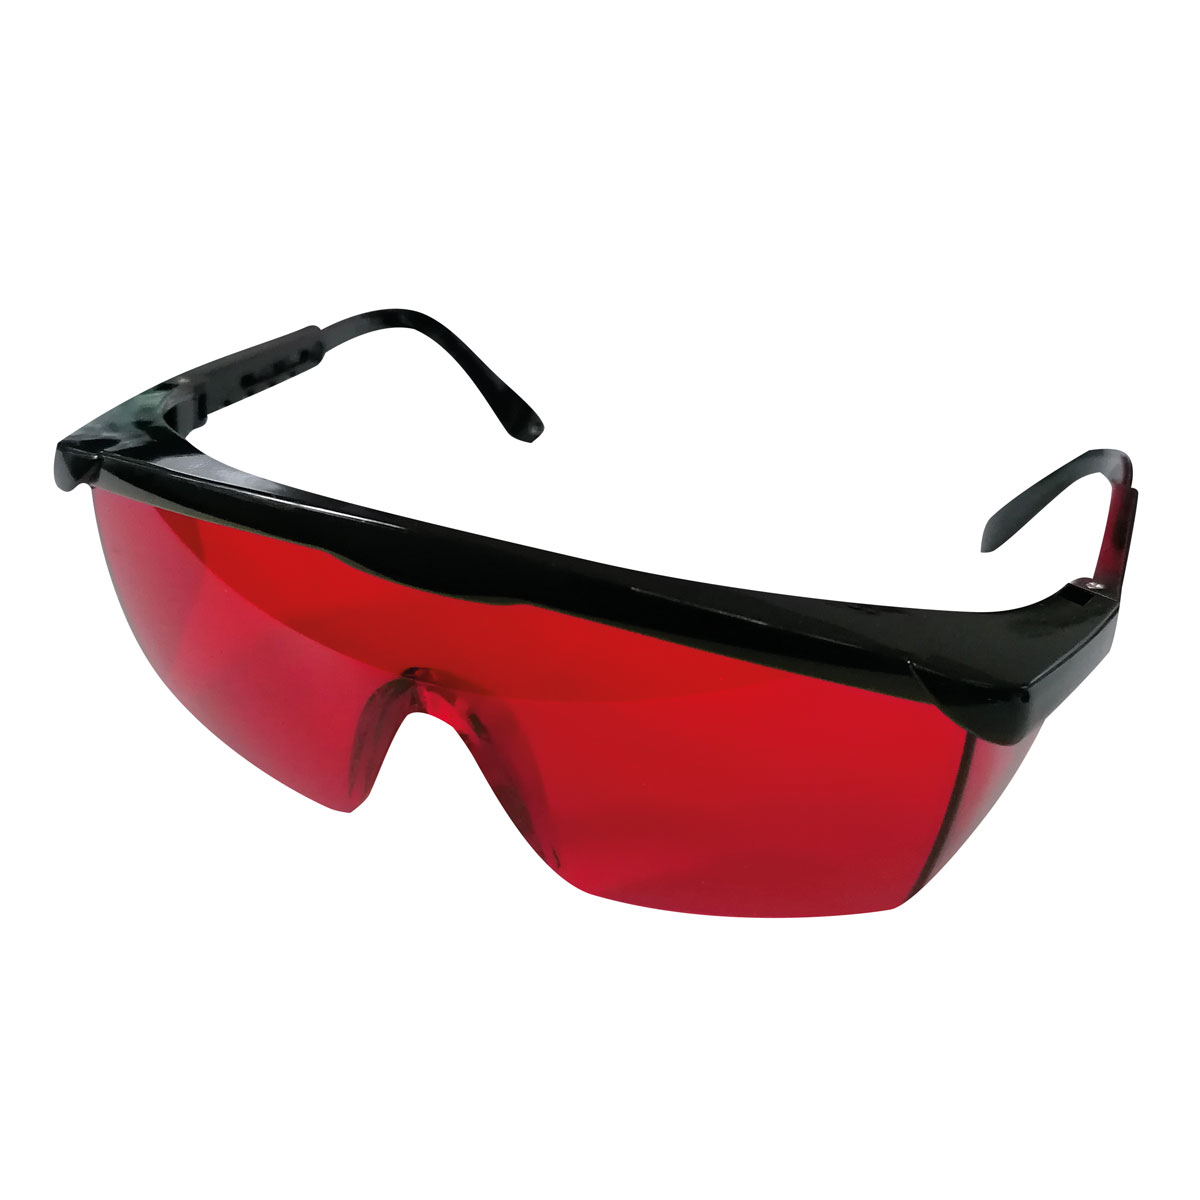 Laserbrille rot, erhöhte Sichtbarkeit von roten Laser-Strahlen